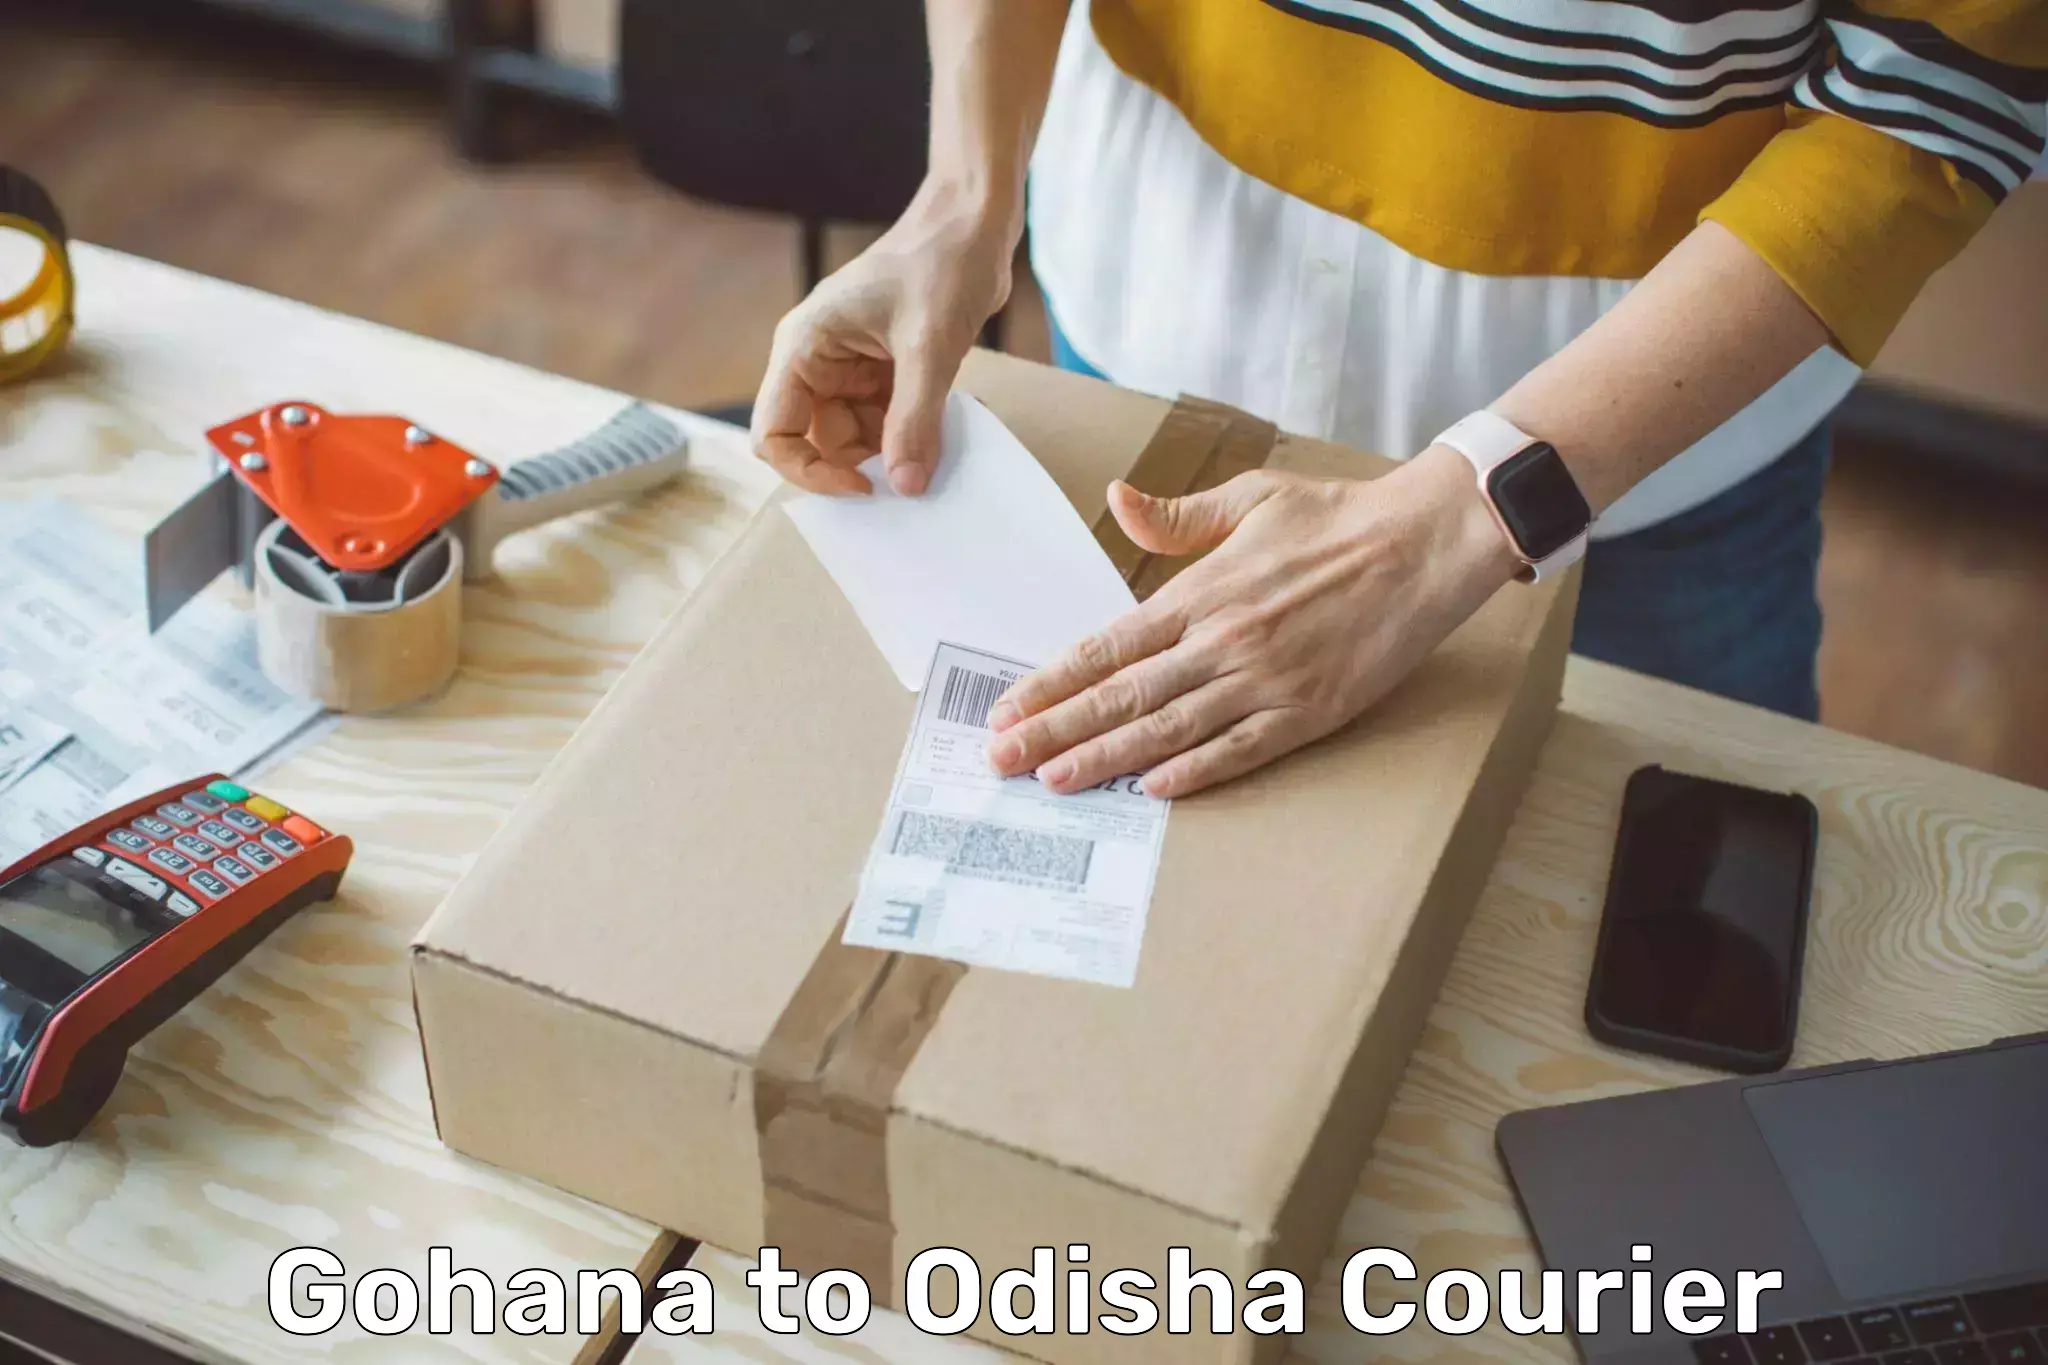 Modern delivery methods Gohana to Raighar